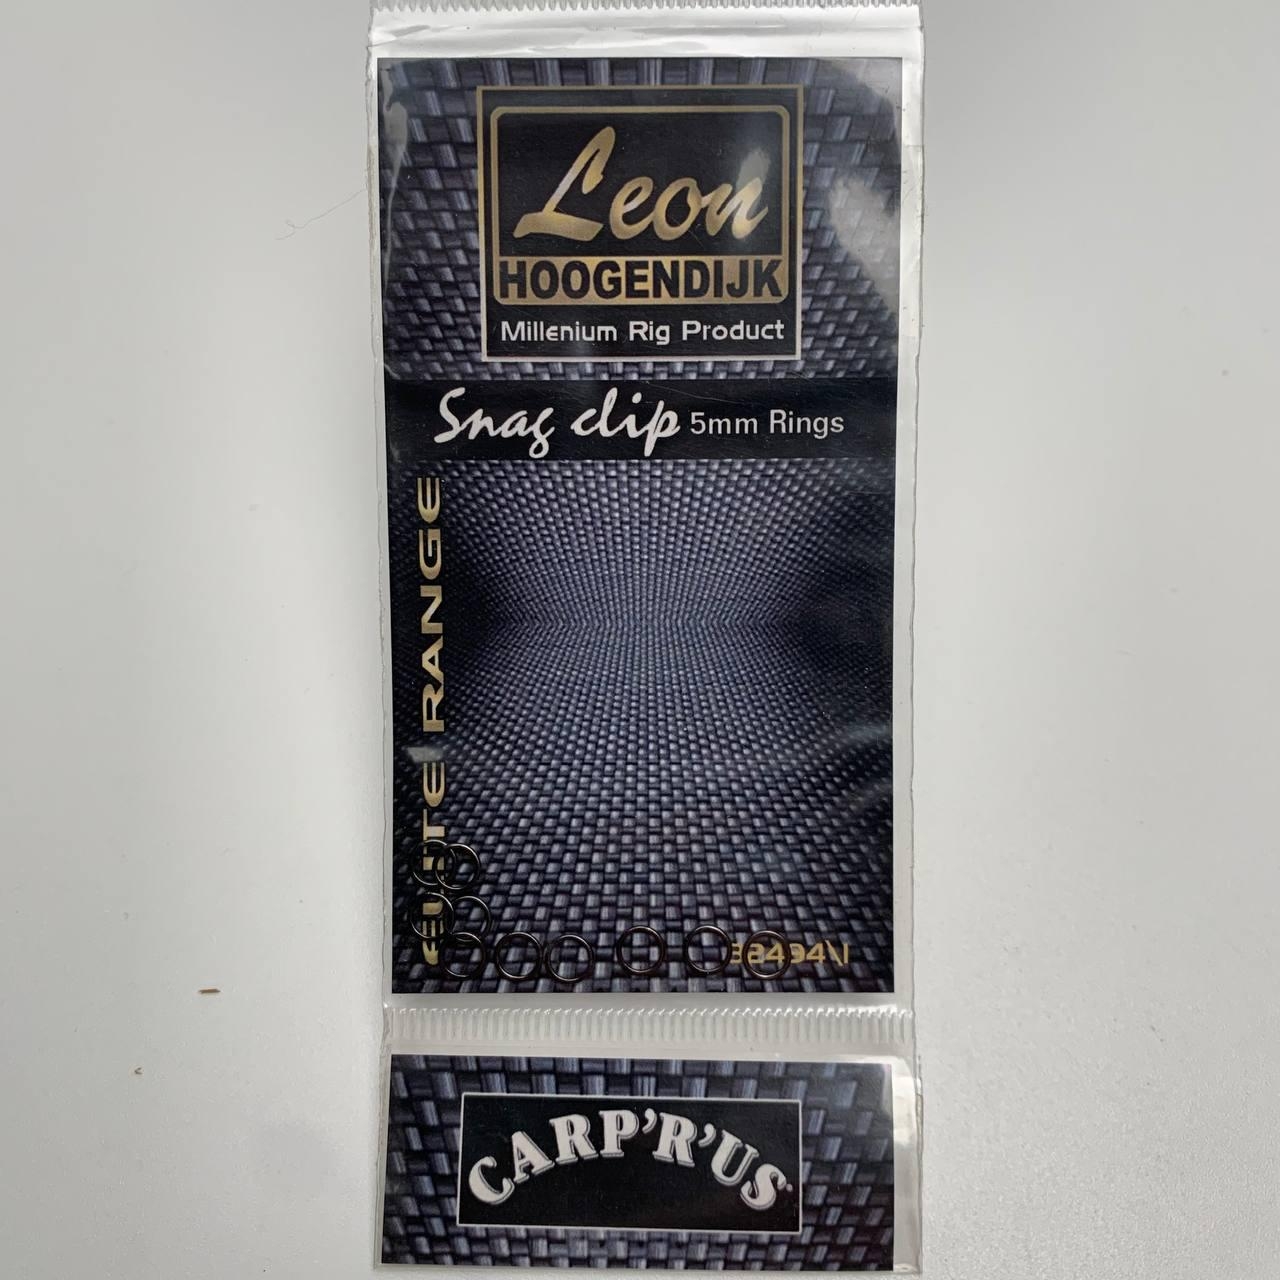 Leon Snag clip 5mm Rings